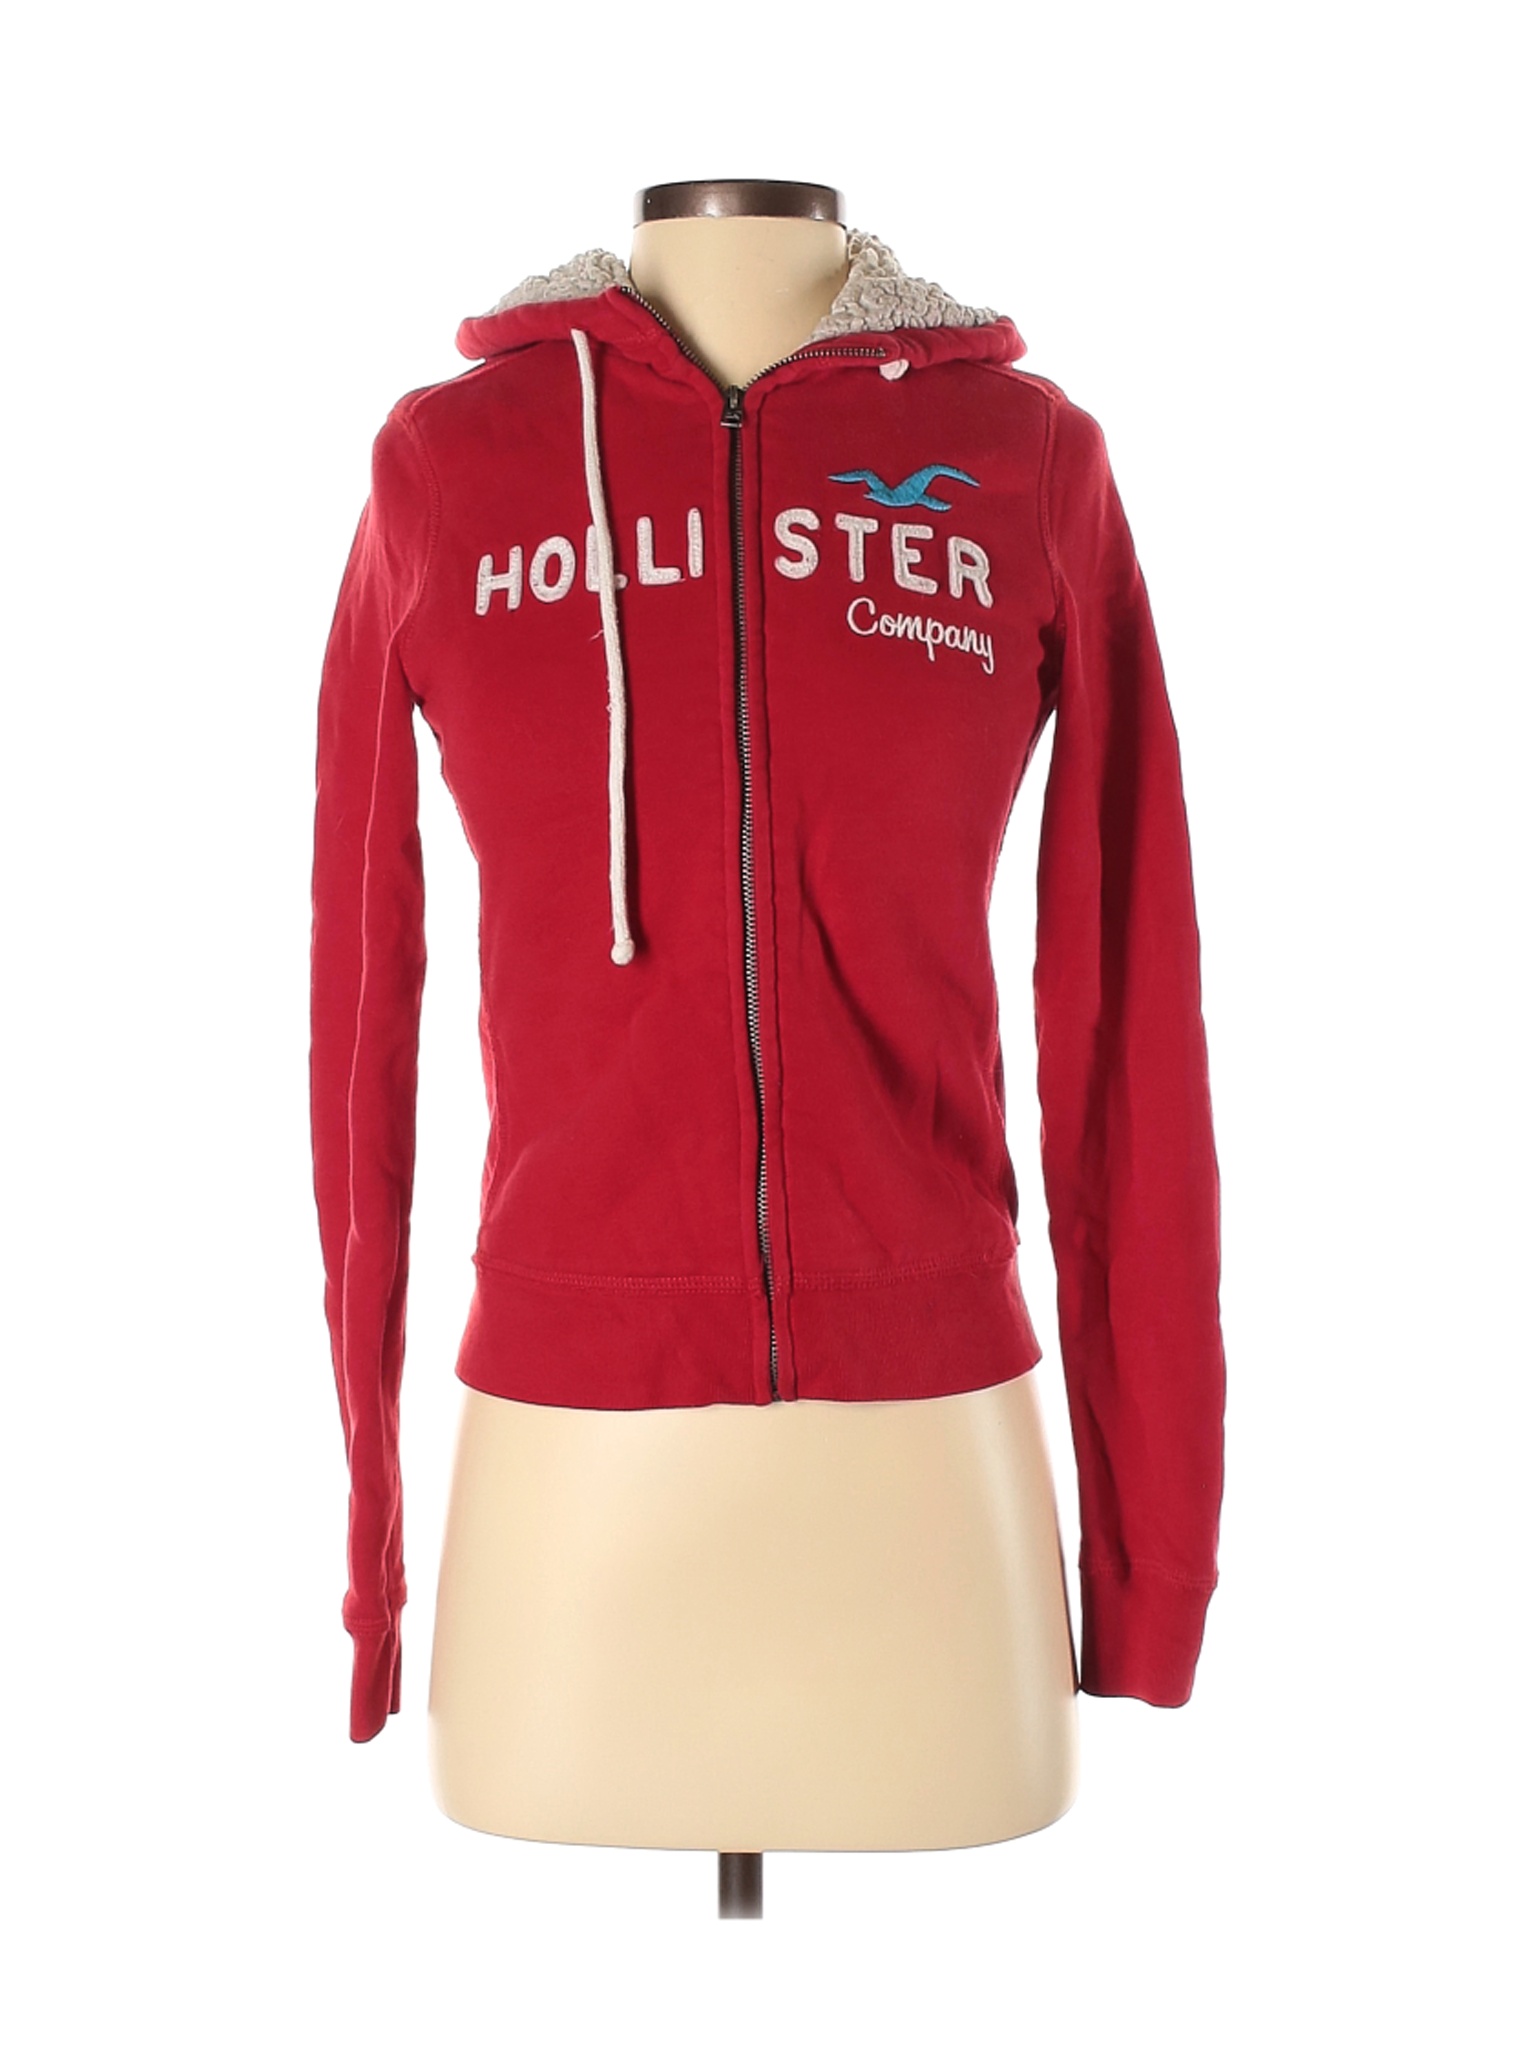 Hollister Women Red Zip Up Hoodie S | eBay